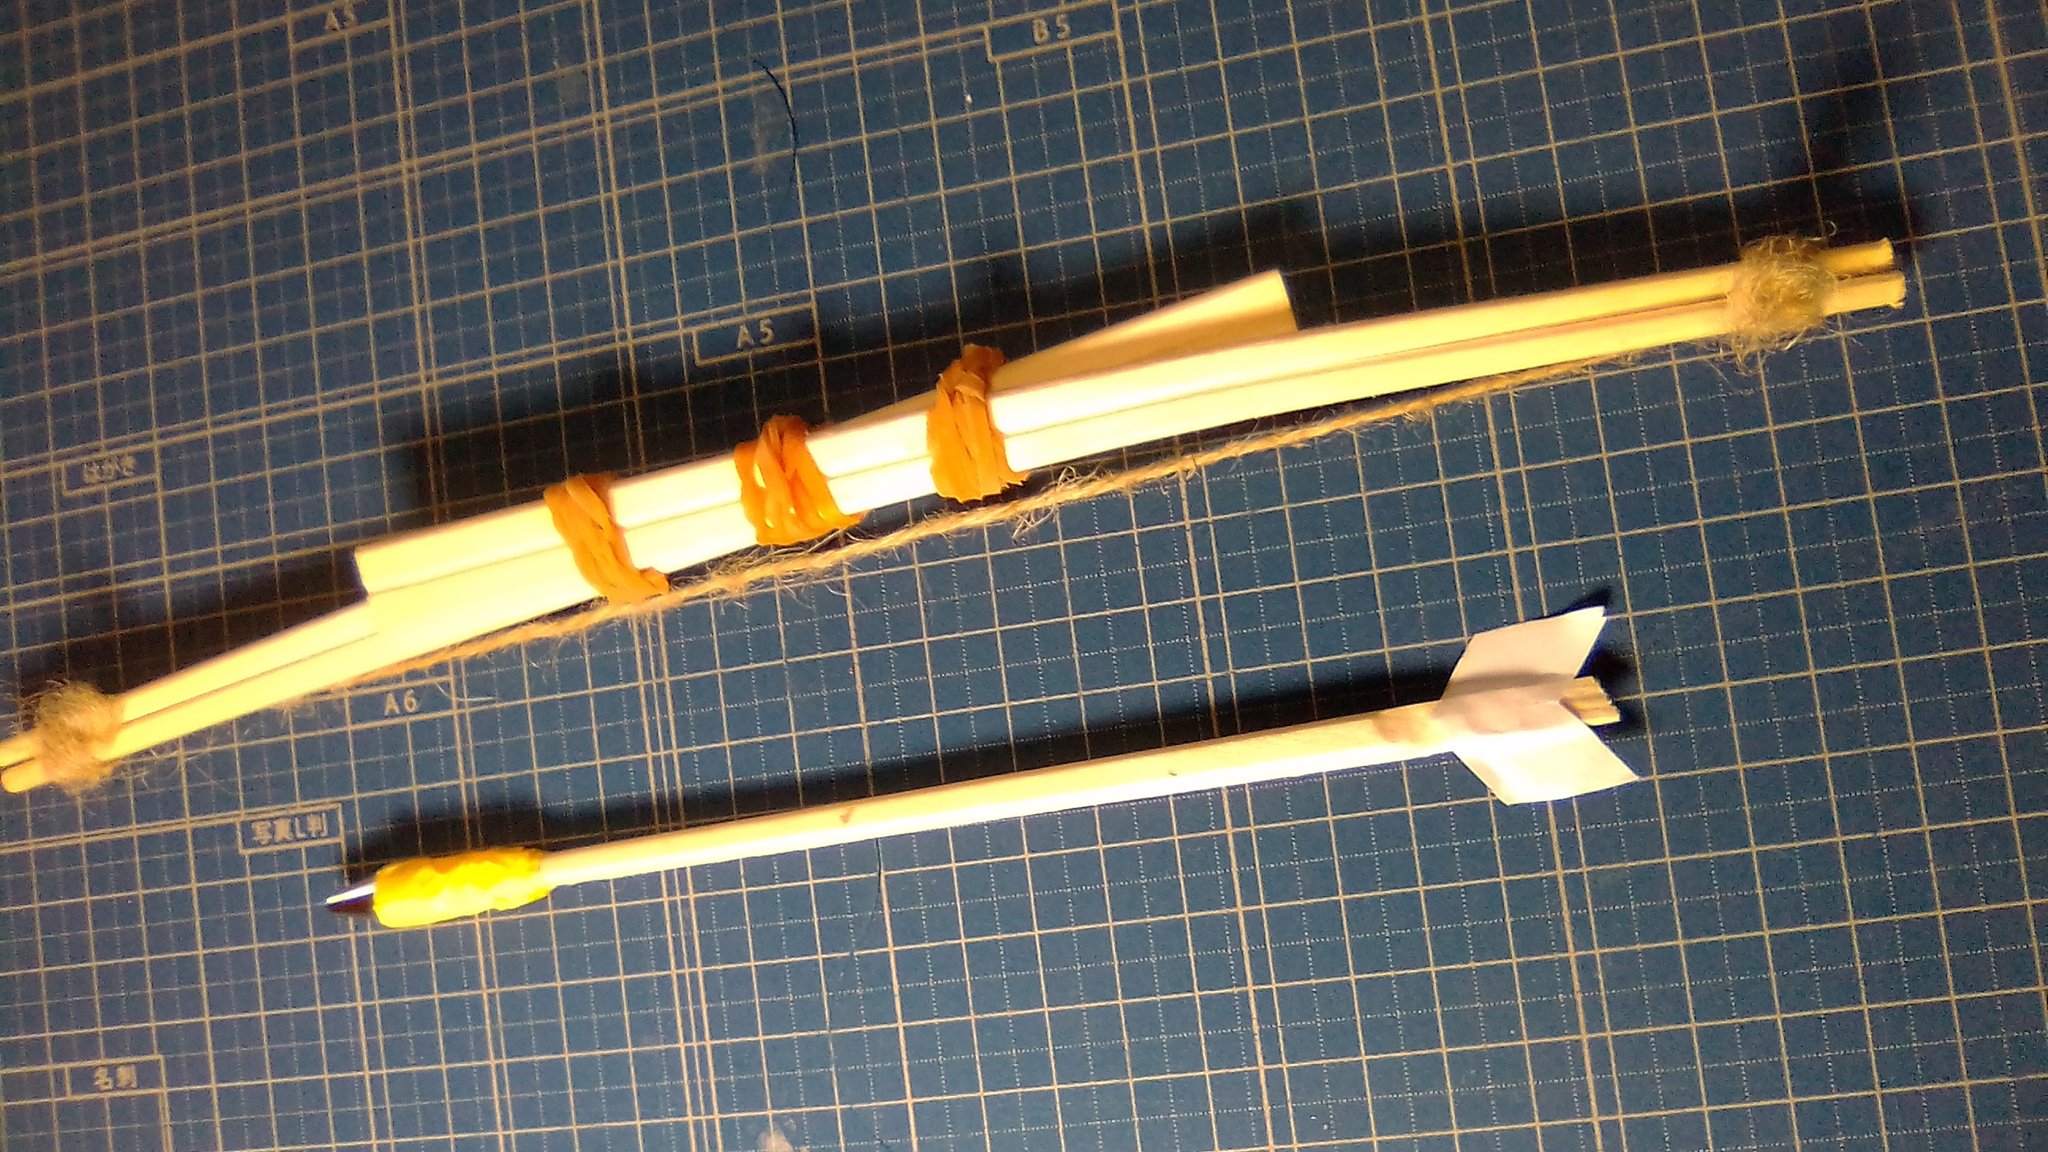 Norimayo お忙しいところすみません 簡単に作れる割り箸弓矢の紹介です 自由研究の工作に悩んでいる全国の小学生に役立てば嬉しいです 材料は 割り箸三膳 輪ゴム三個 麻紐を一本だけ 2本の割り箸を輪ゴムで留め麻紐を張っておしまいです 矢は適当 弓